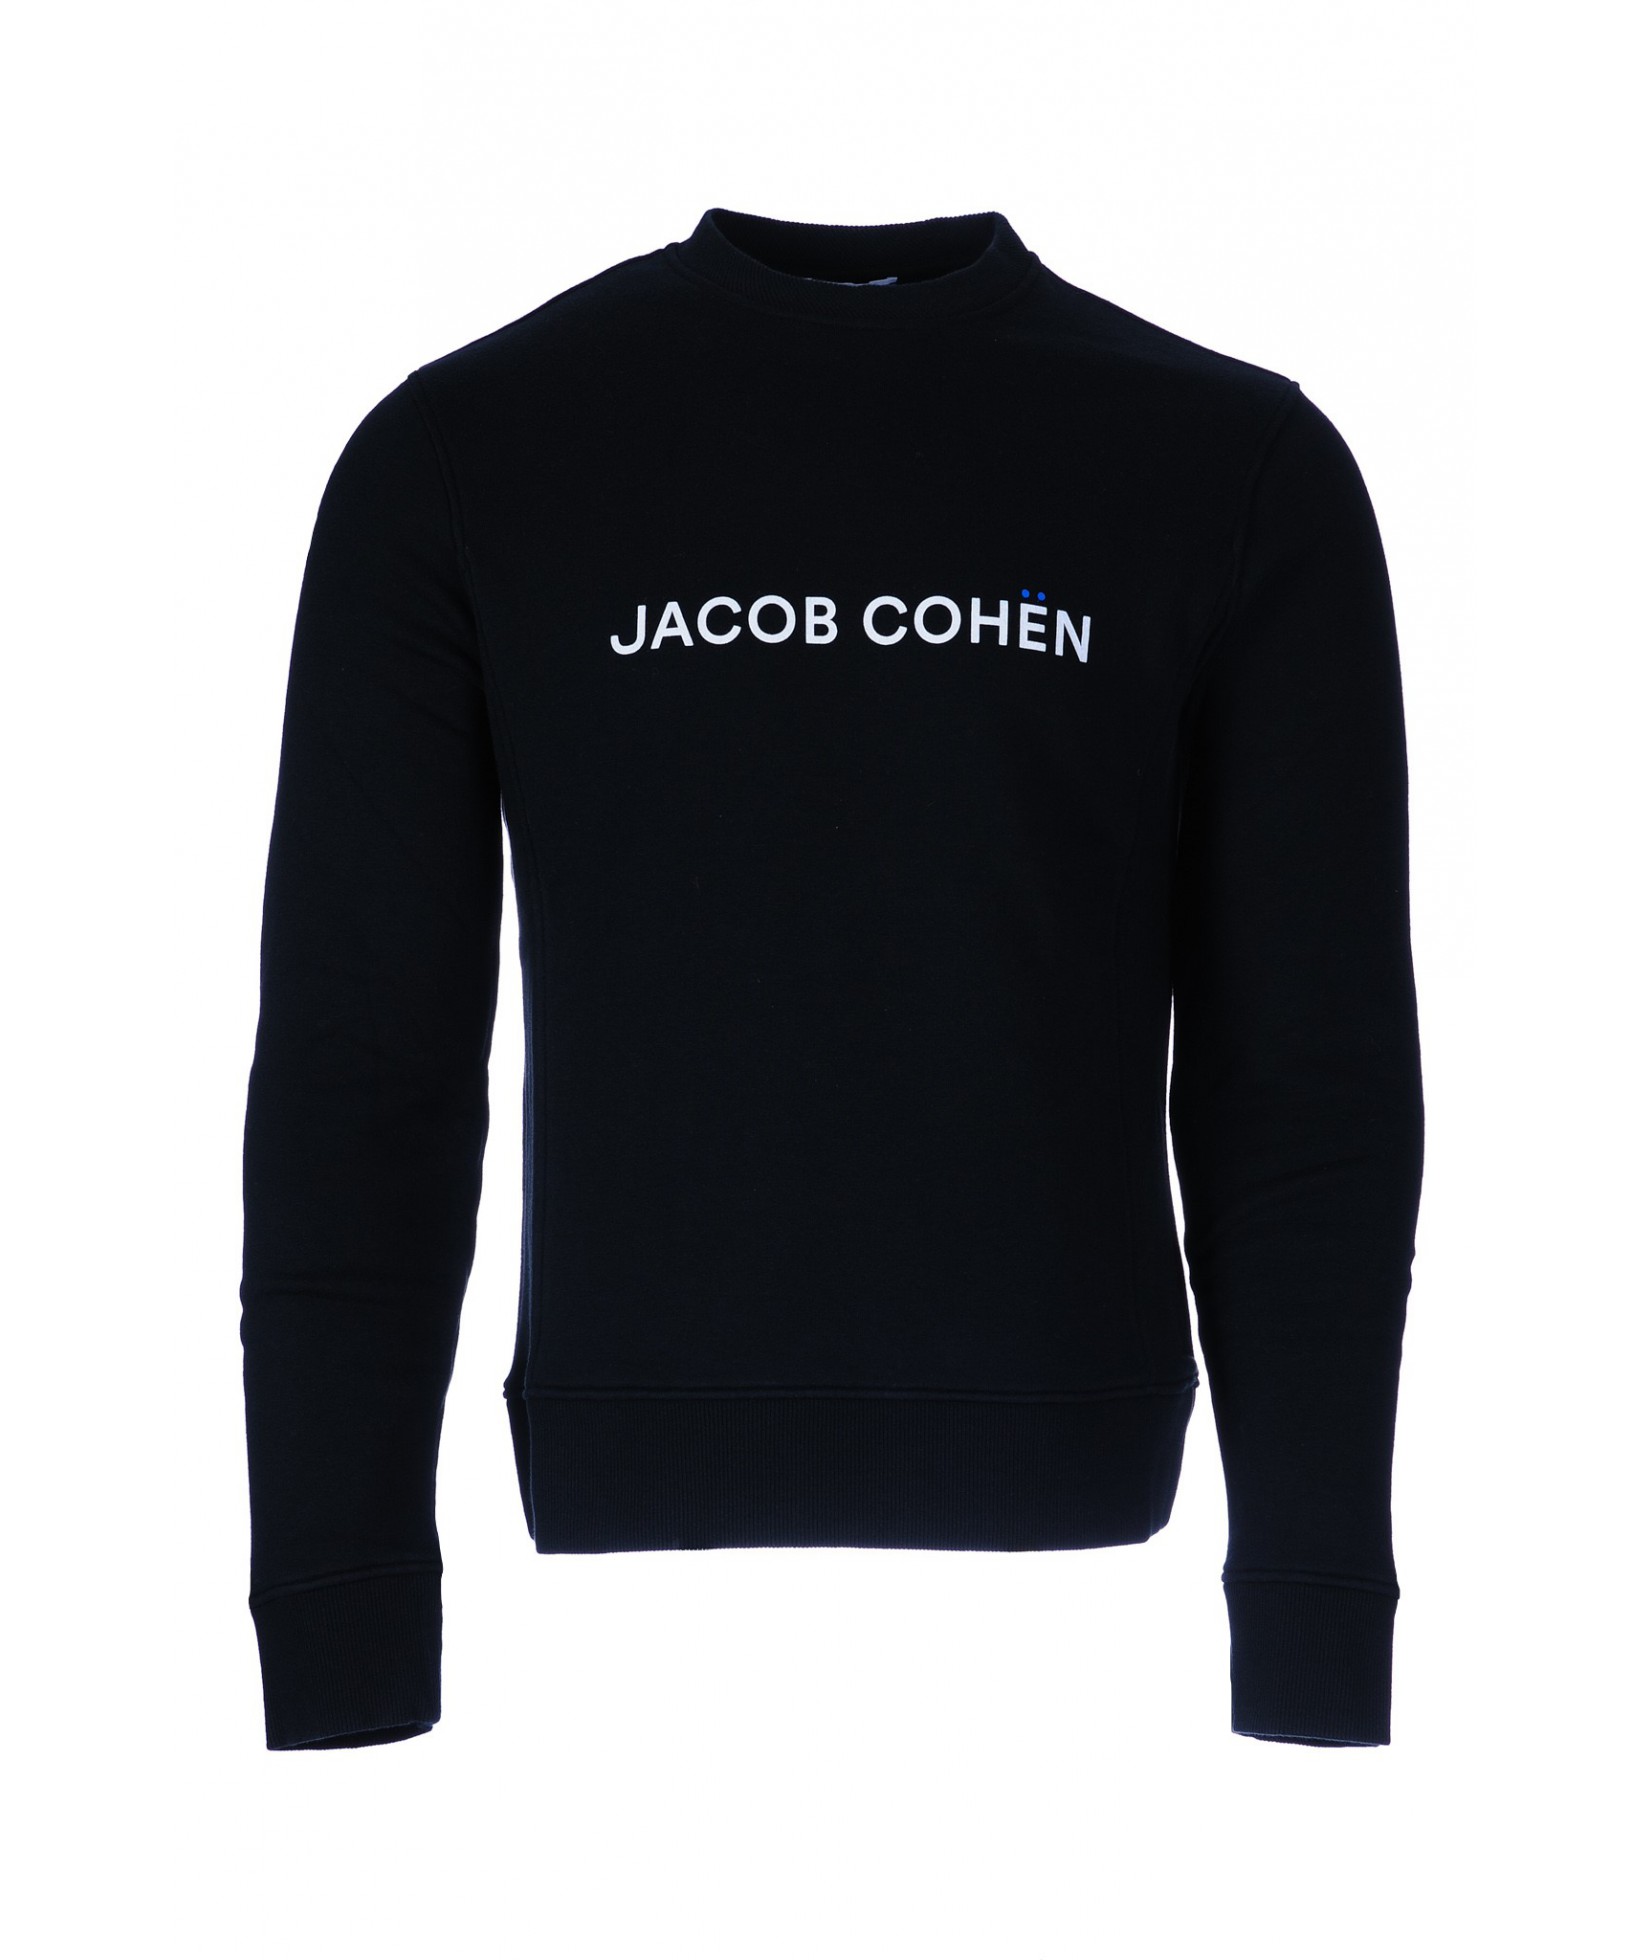 Jacob Cohën sweater zwart 4374 C74 (36297)